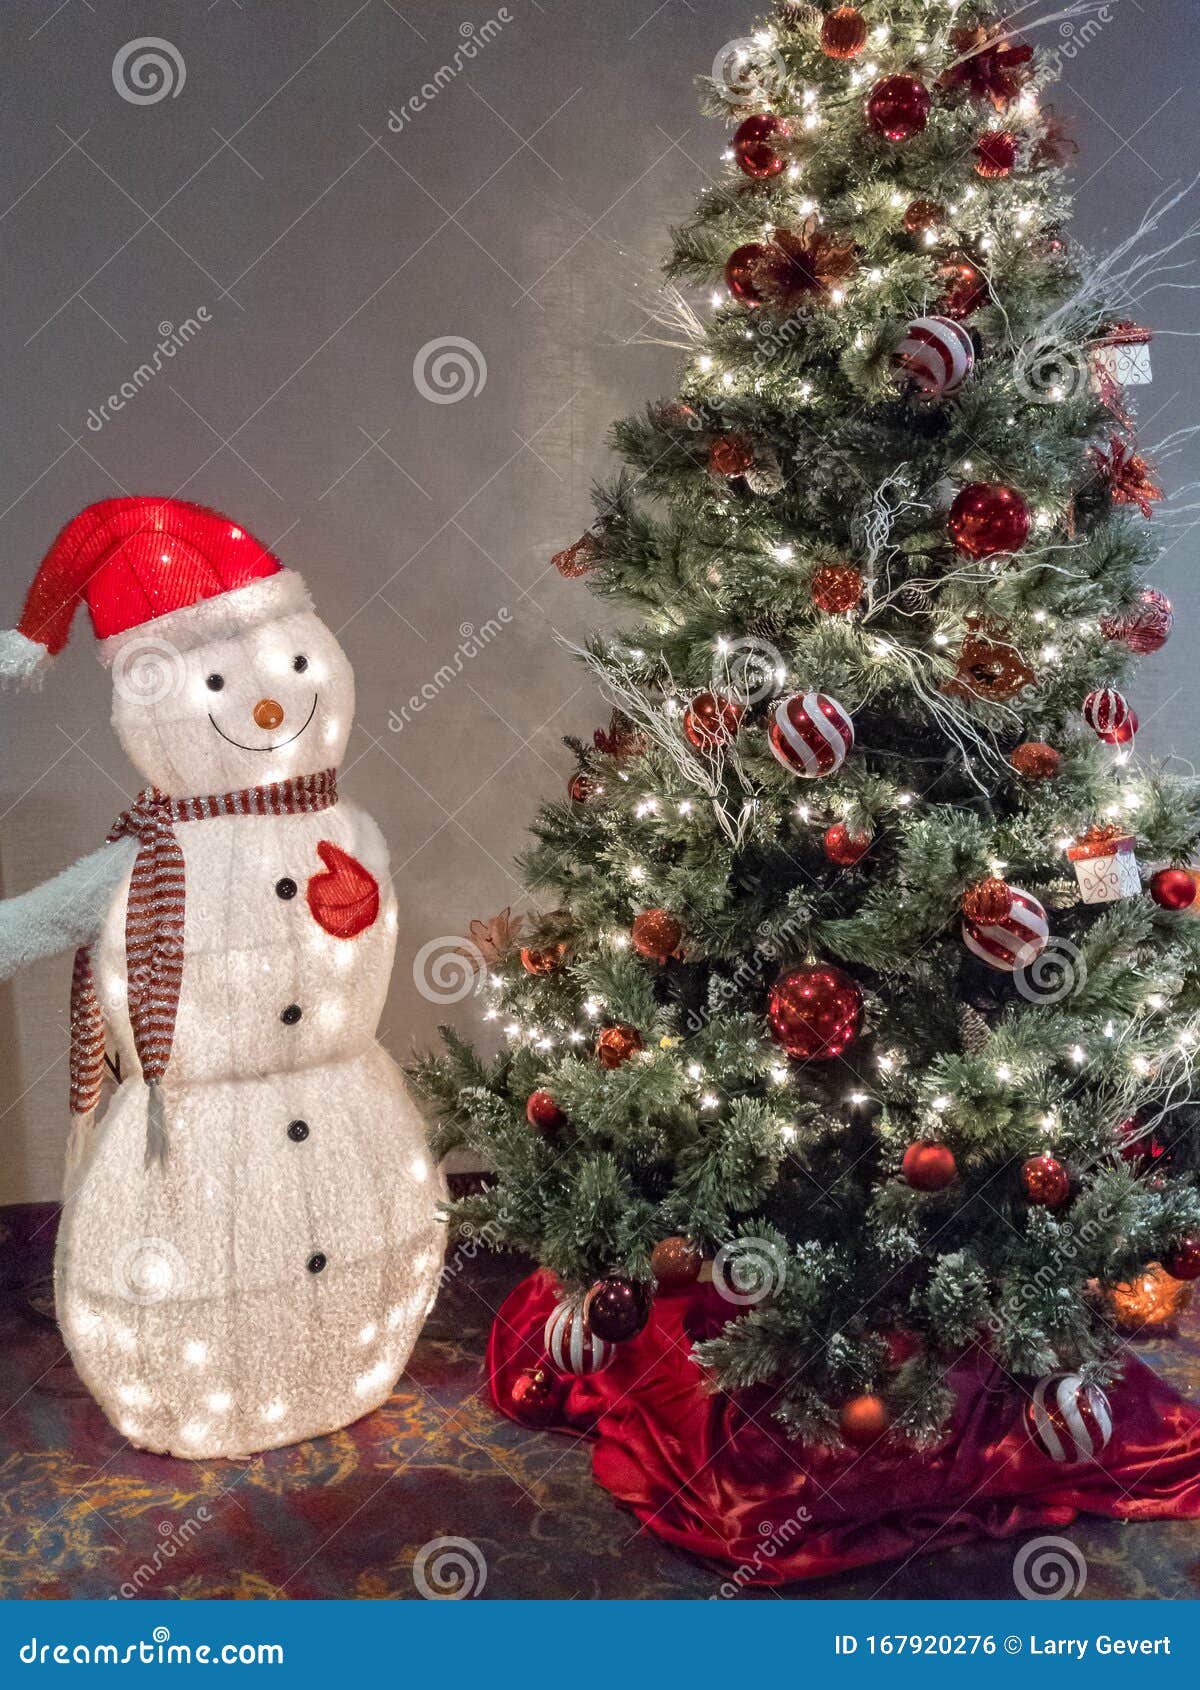 Hombre De Nieve Y árbol De Navidad Foto de archivo - Imagen de ornamento,  navidad: 167920276